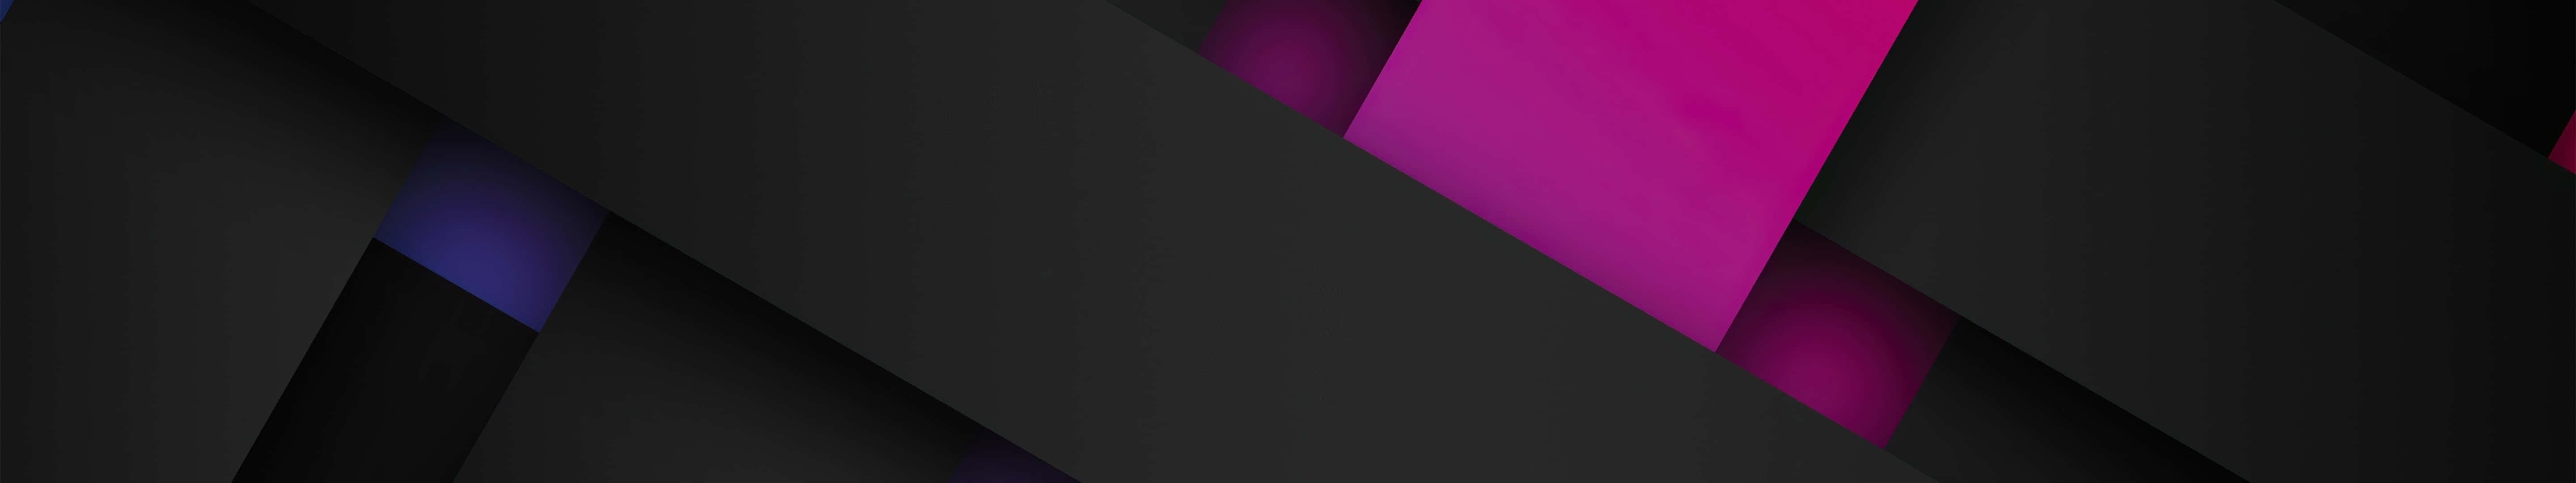 Eineschwarz-violette Abstrakte Tapete Mit Einem Schwarzen Hintergrund.